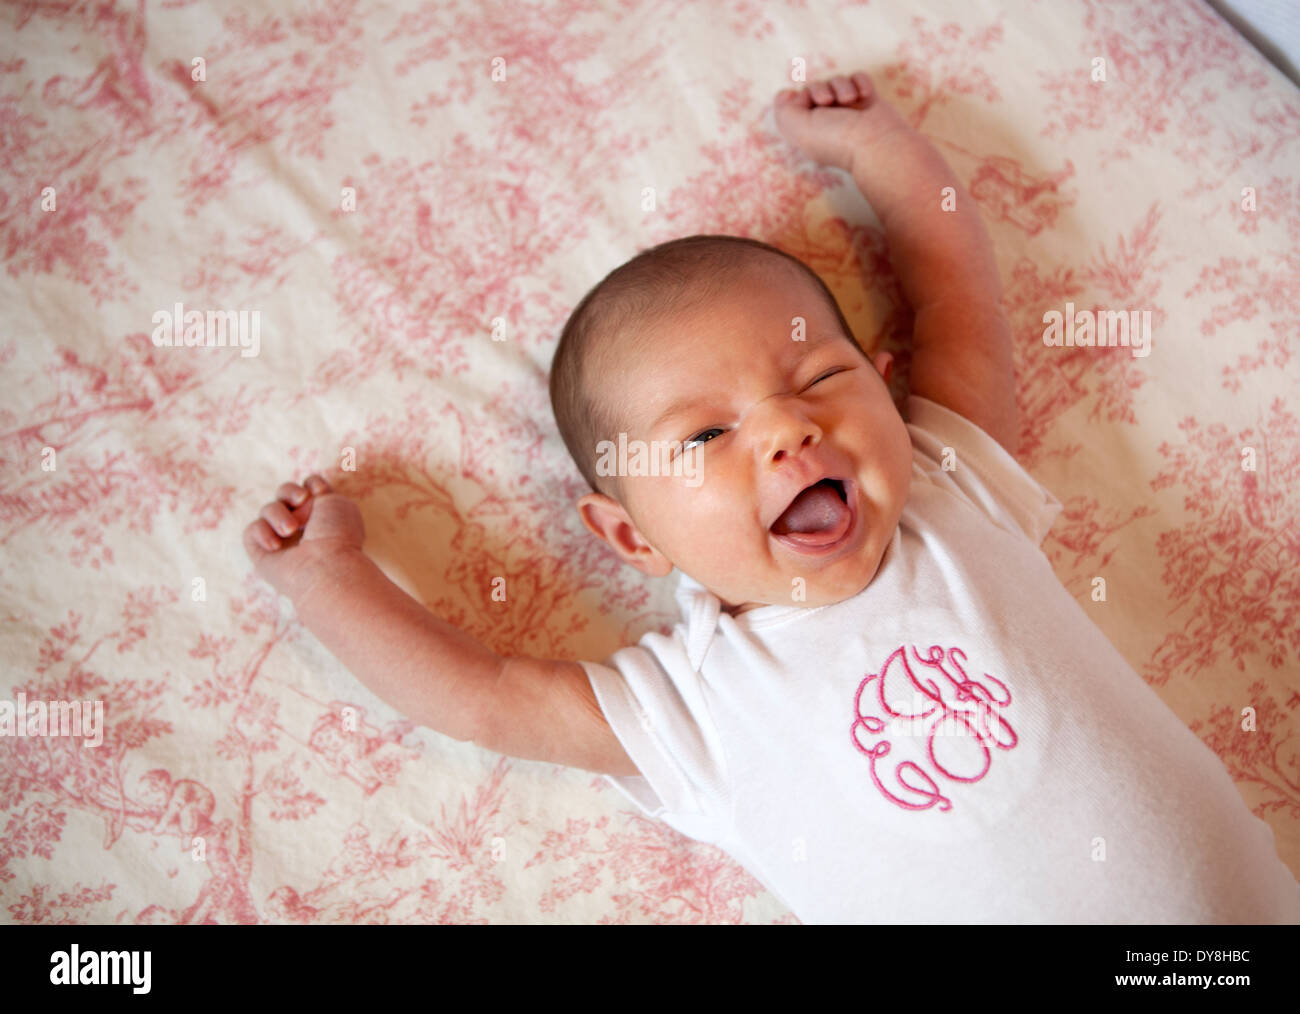 Zwei Monate altes Baby lächelnd mit Arme erhoben, als ob einen Touchdown, Foto von Janet Worne aufrufen Stockfoto